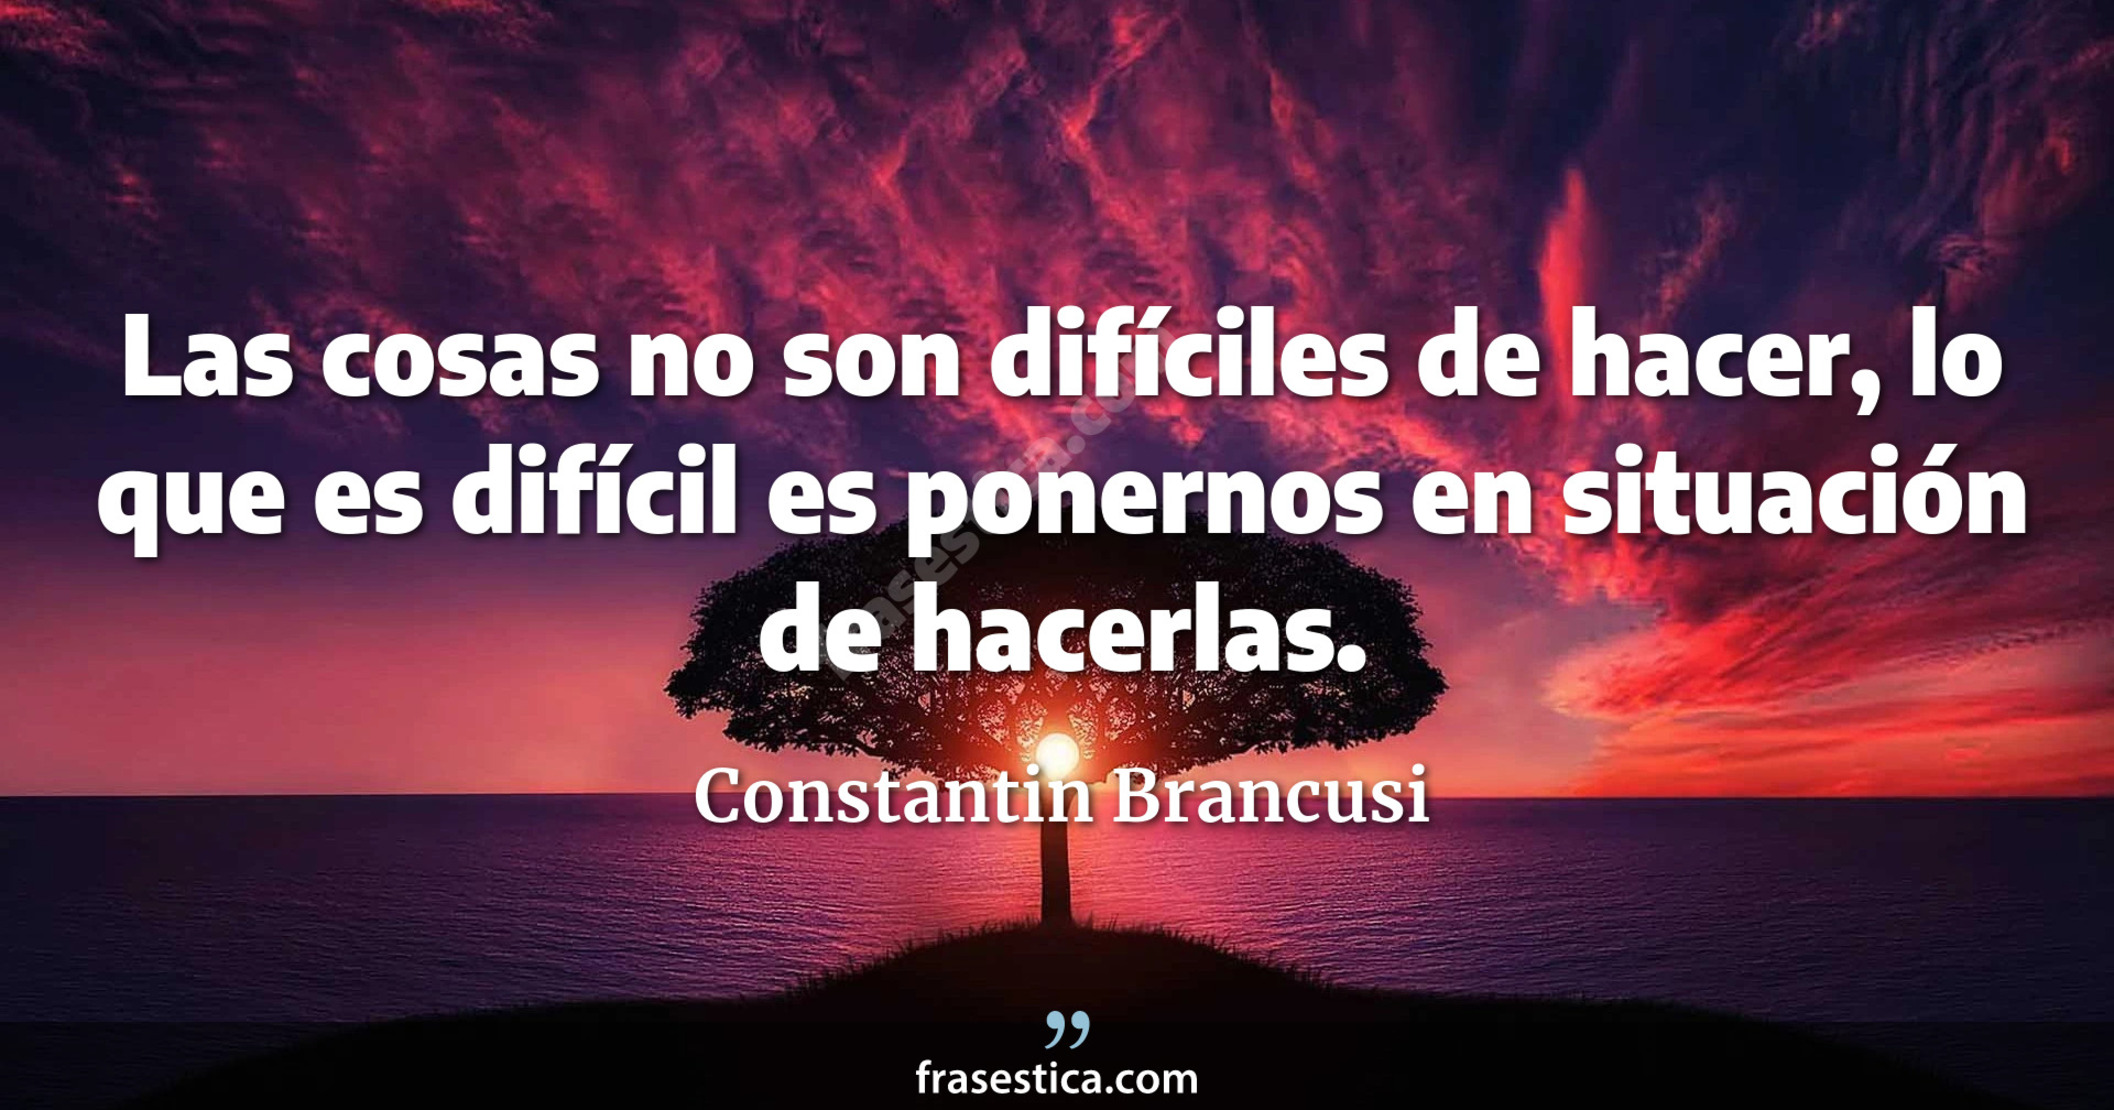 Las cosas no son difíciles de hacer, lo que es difícil es ponernos en situación de hacerlas. - Constantin Brancusi